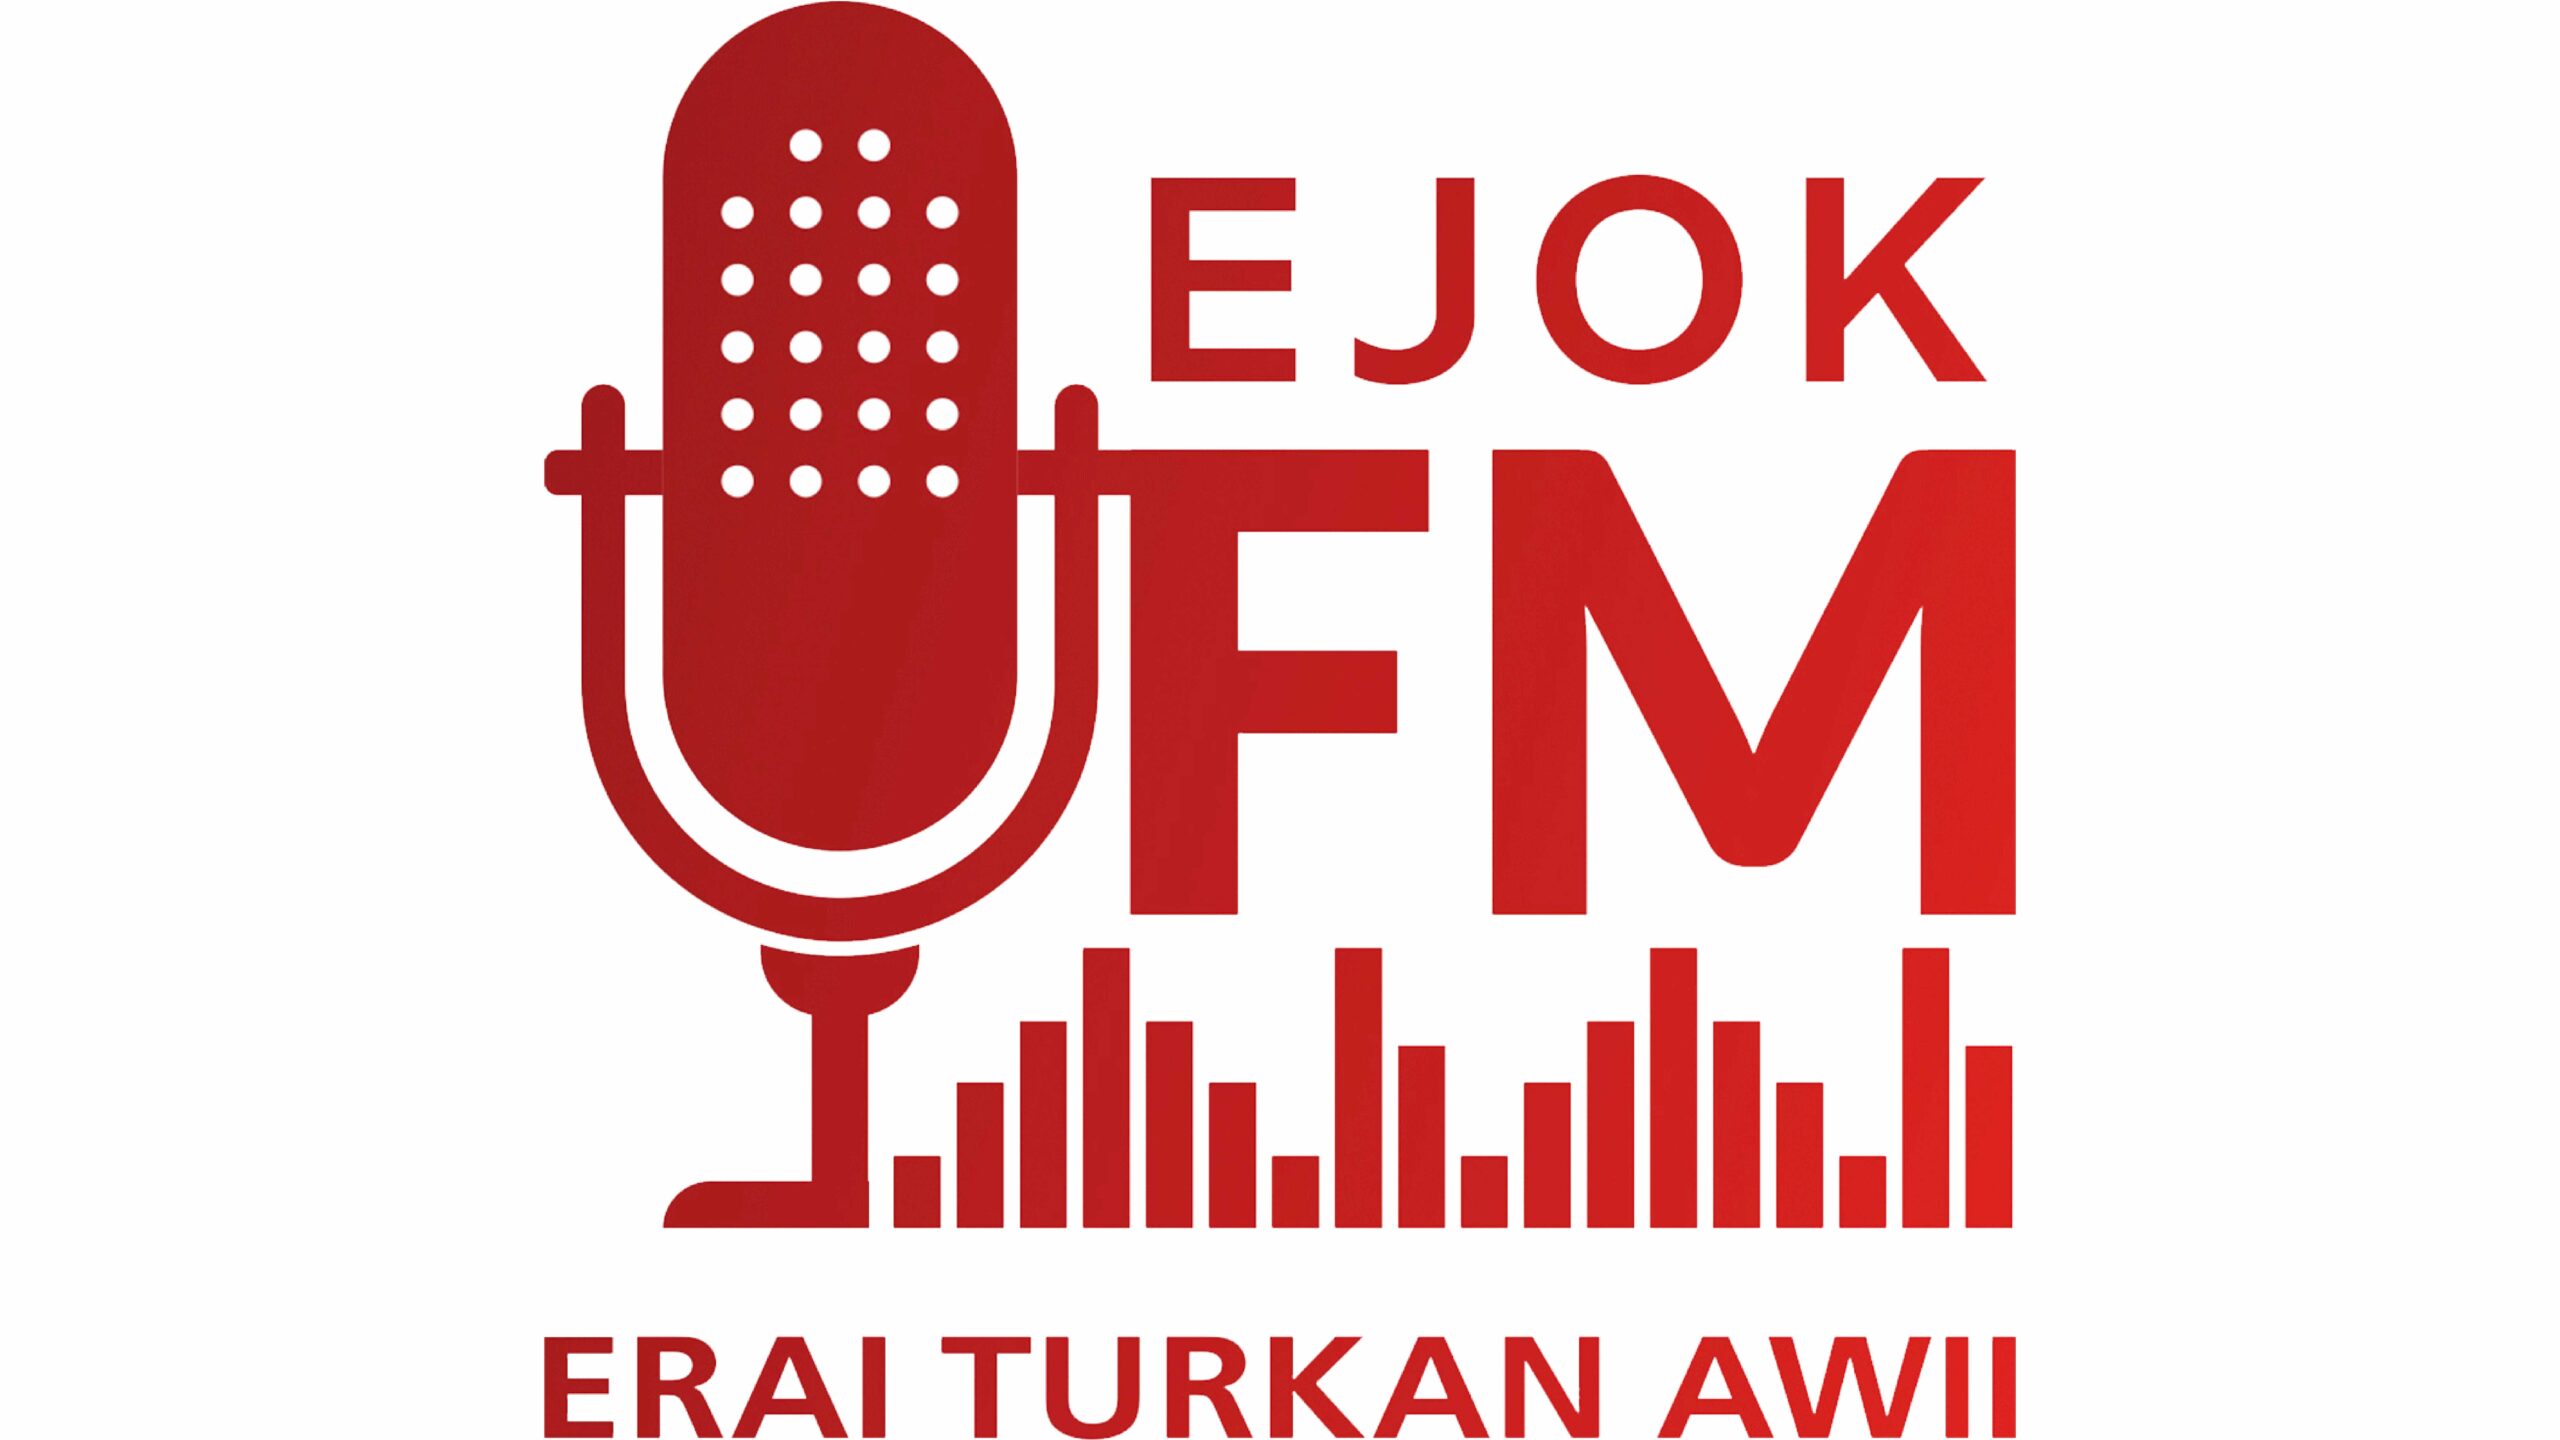 Ejok main logo36 scaled